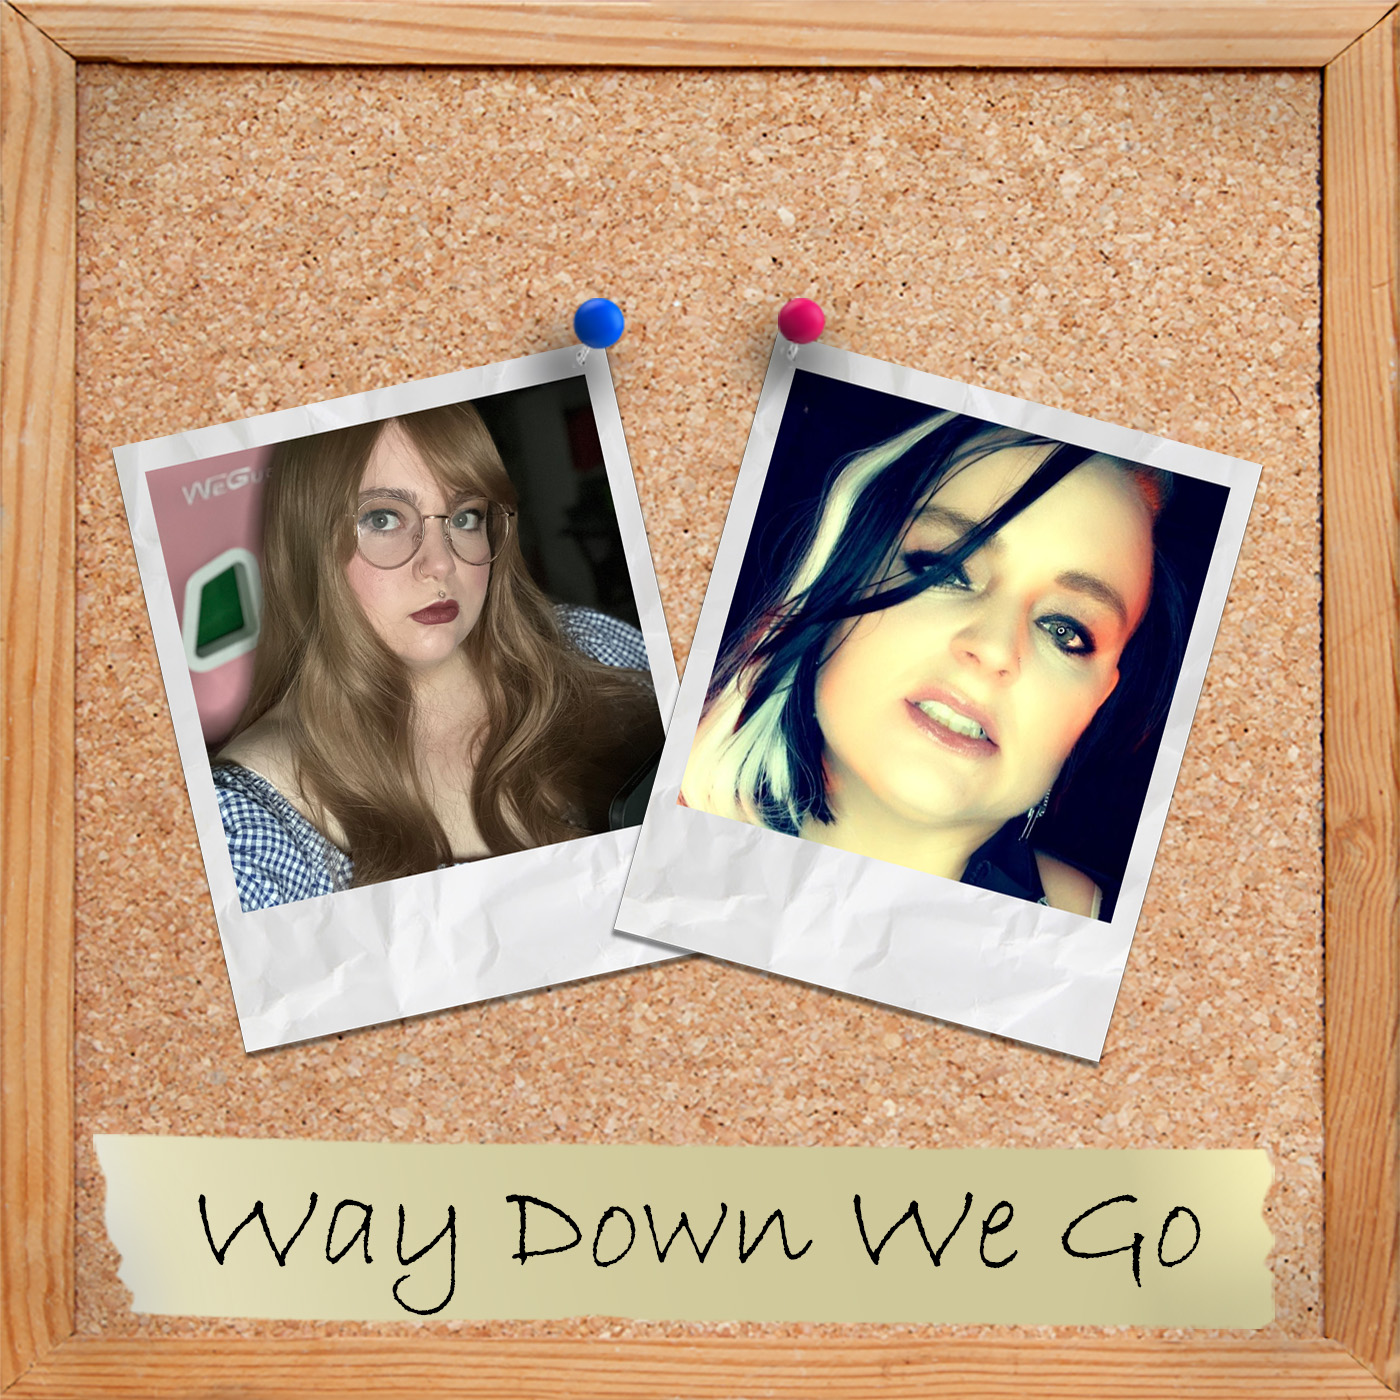 S1 Ep4: Way Down We Go